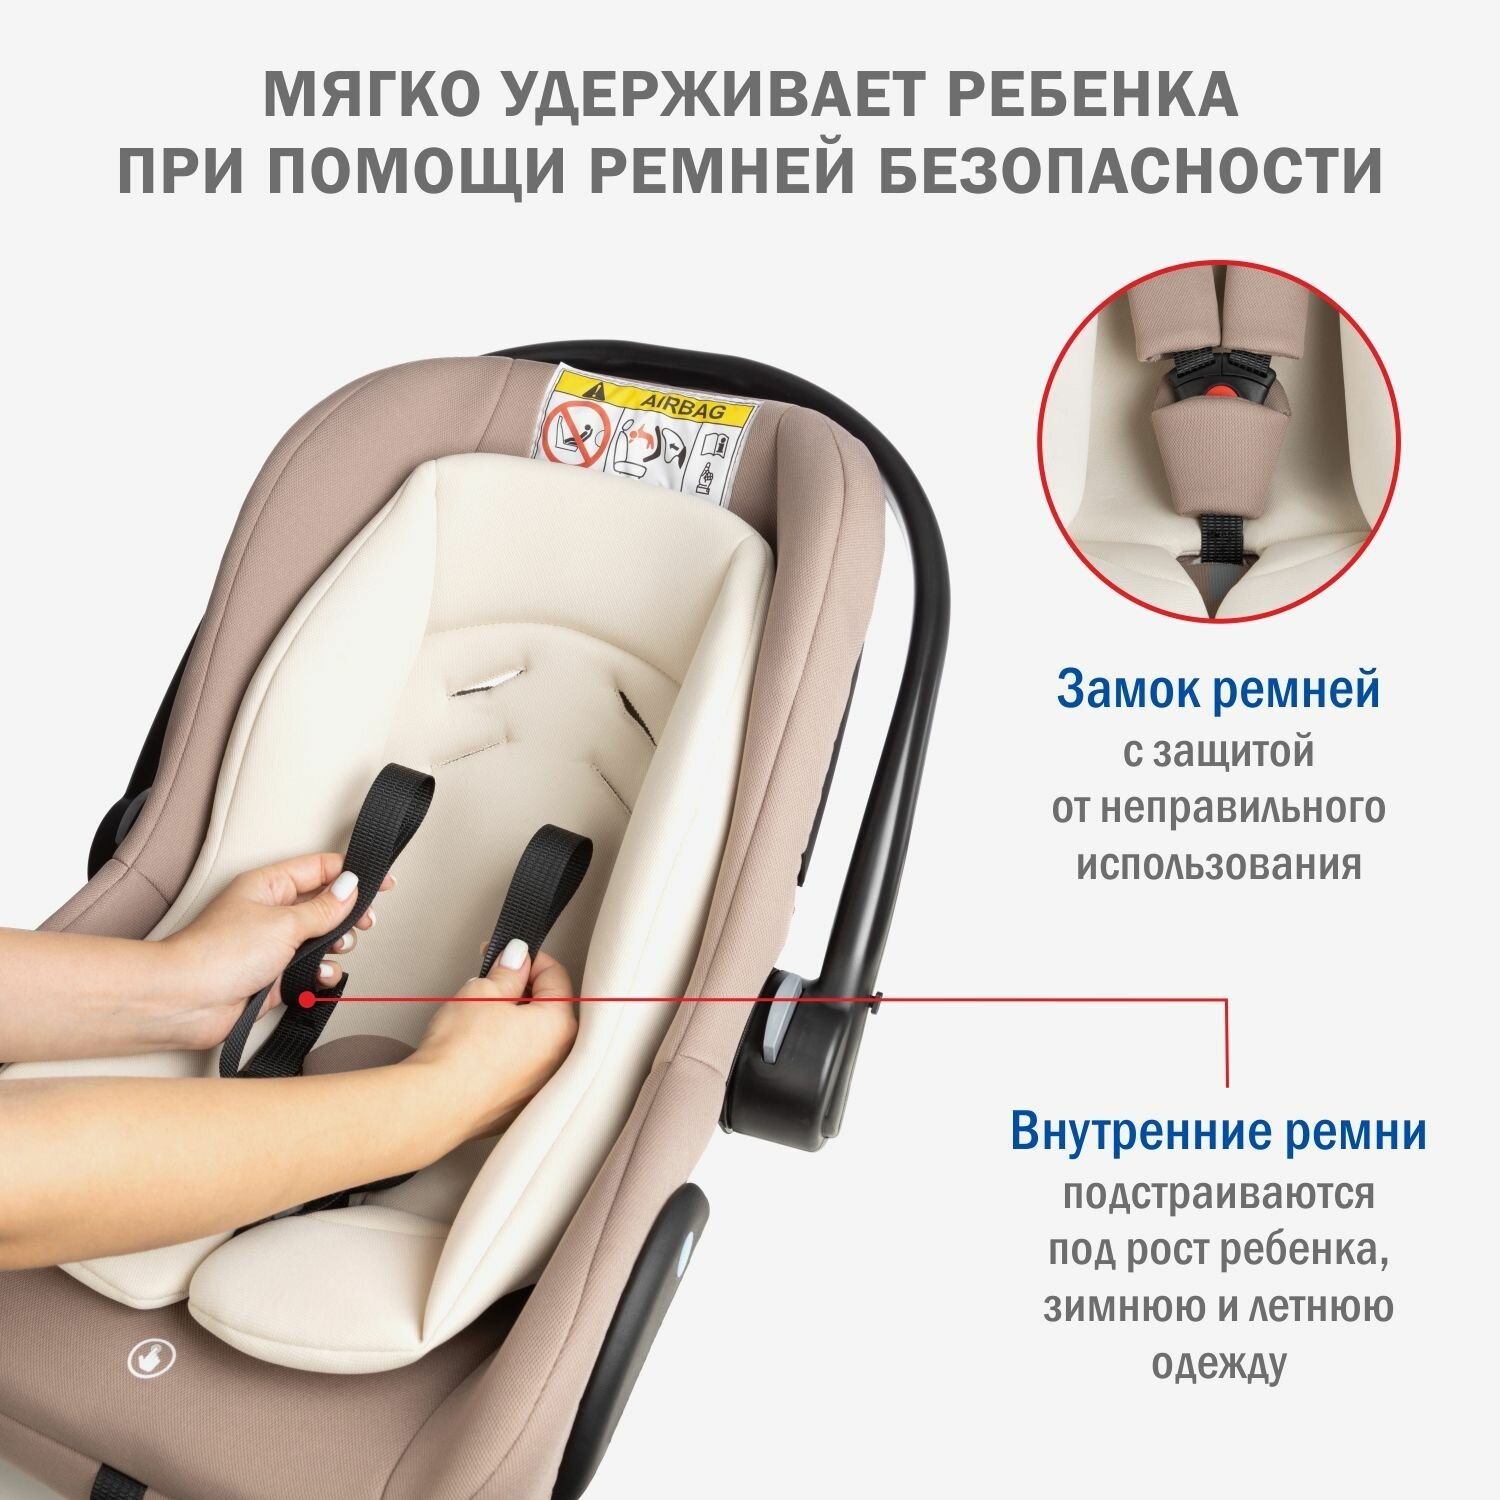 Автокресло детское, автолюлька для новорожденных Siger Дафни от 0 до 13 кг, цвет мокко